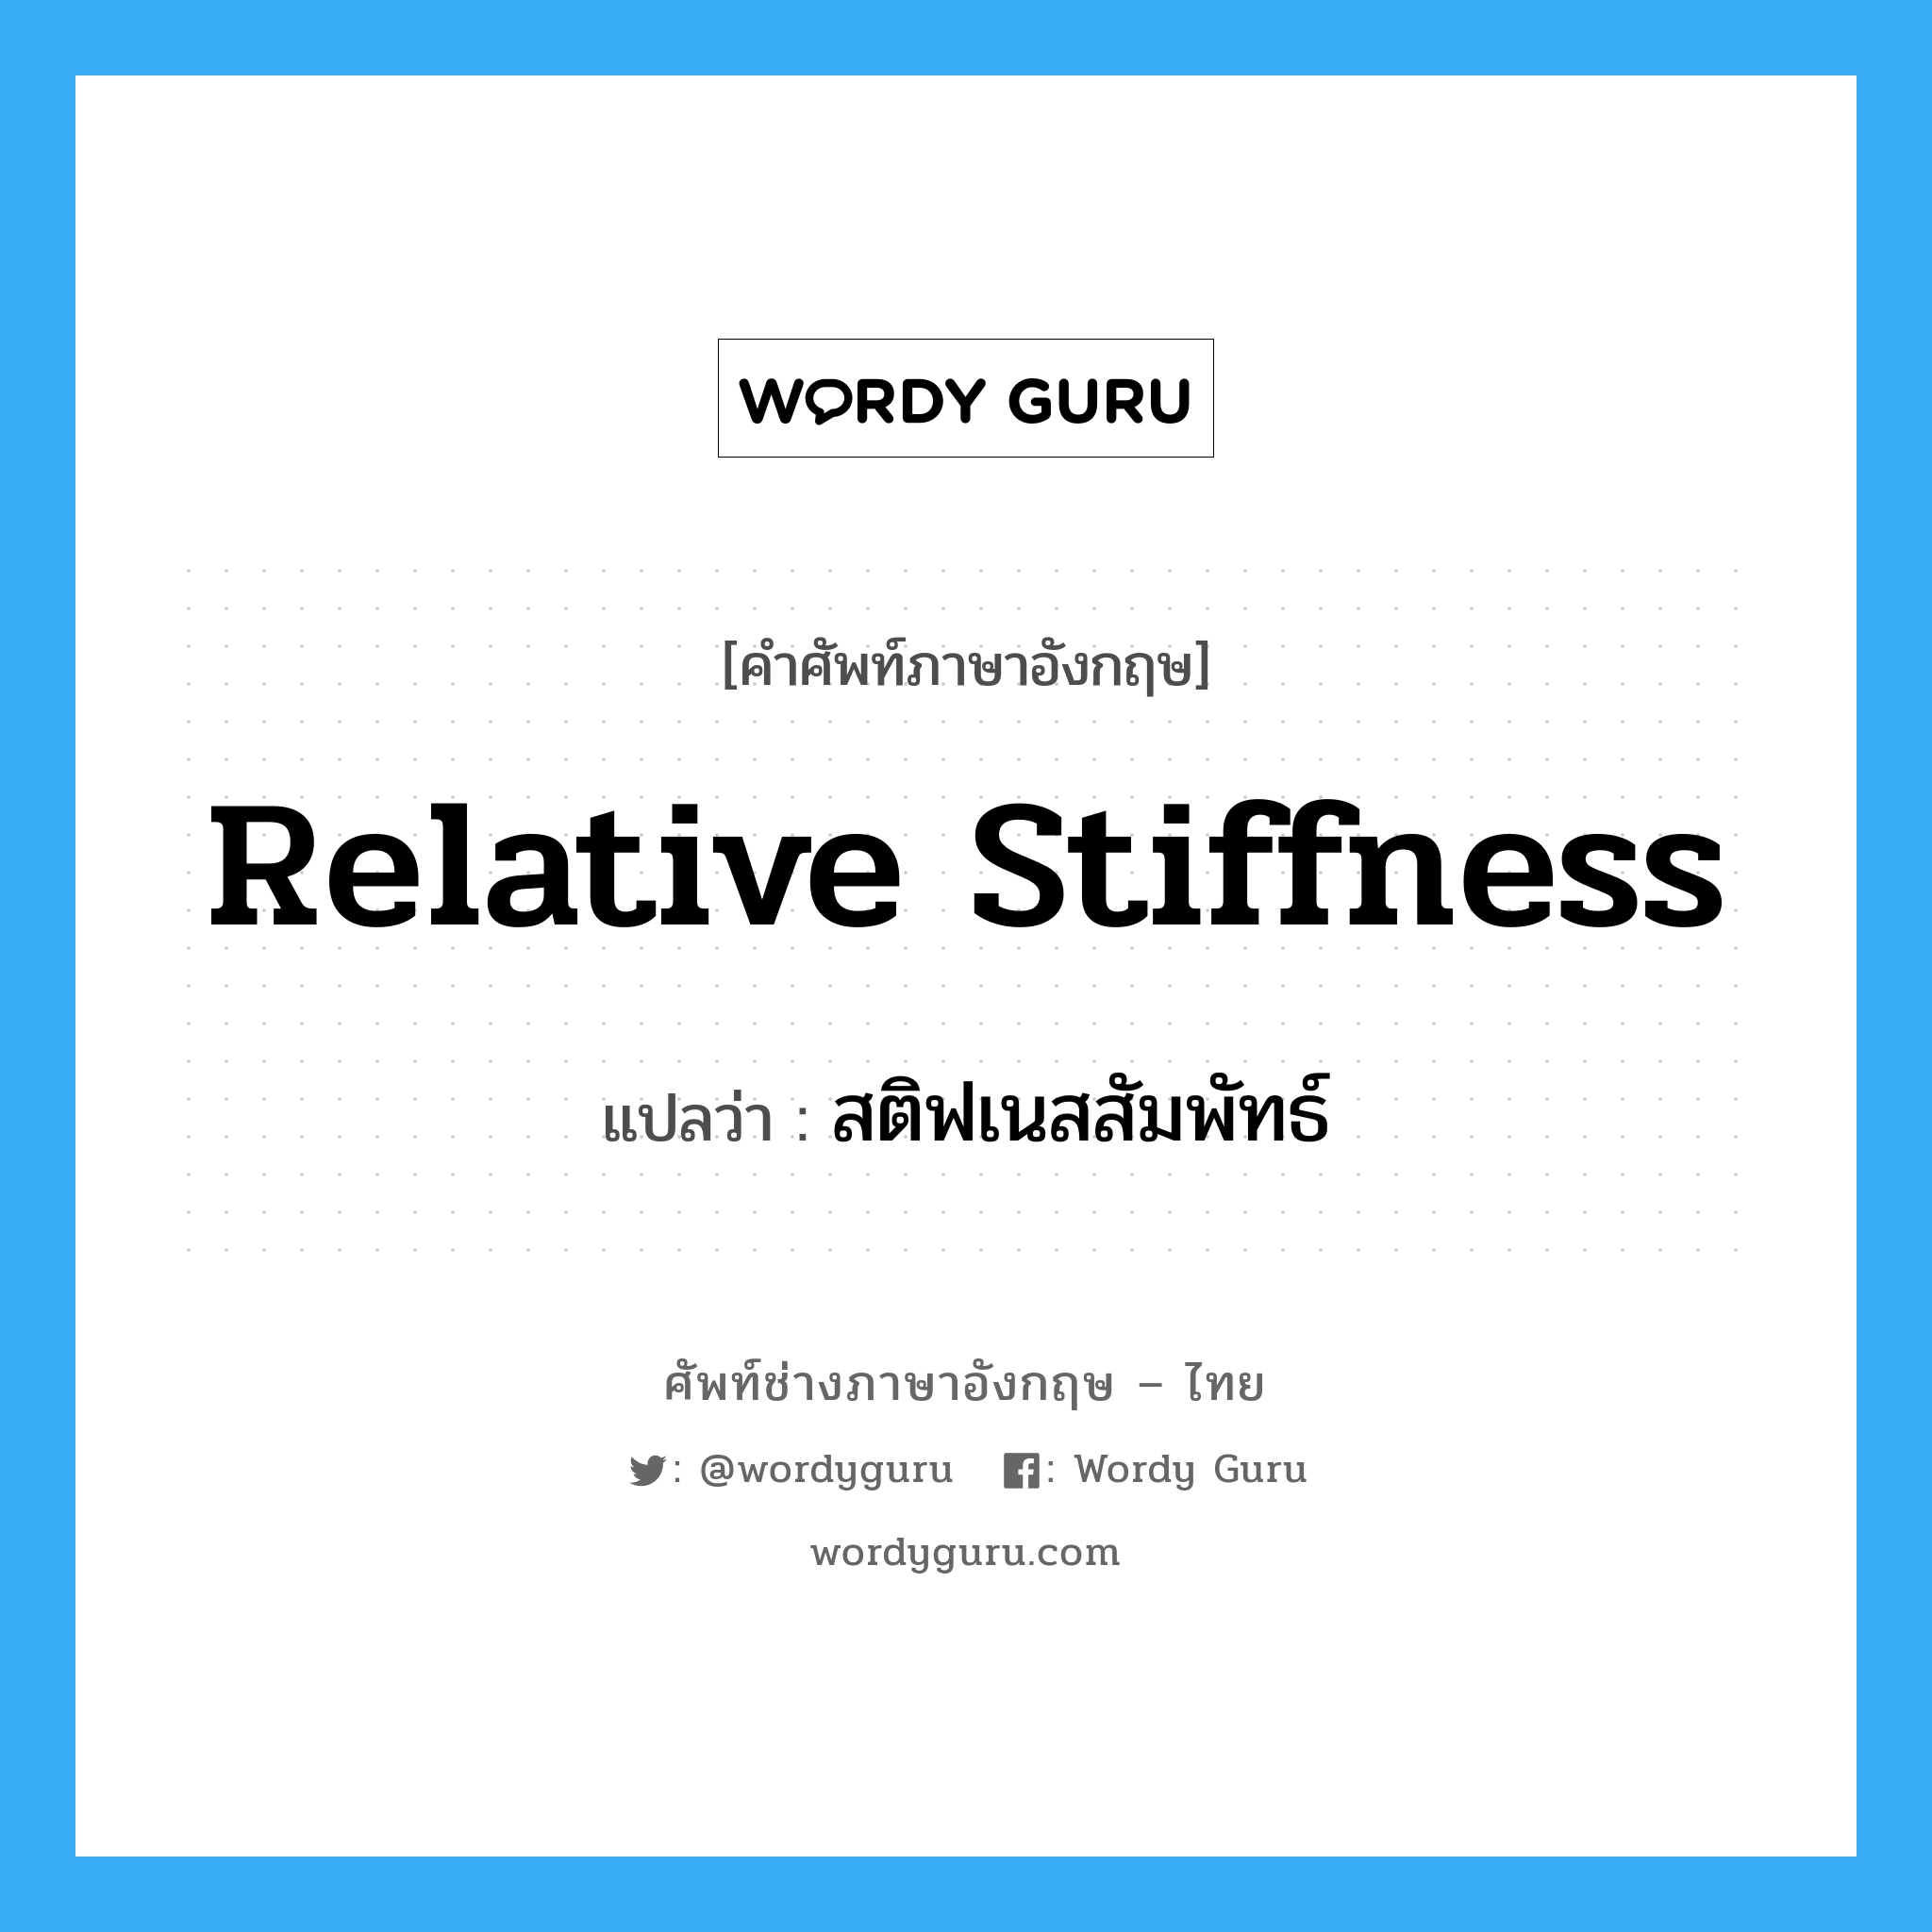 relative stiffness แปลว่า?, คำศัพท์ช่างภาษาอังกฤษ - ไทย relative stiffness คำศัพท์ภาษาอังกฤษ relative stiffness แปลว่า สติฟเนสสัมพัทธ์